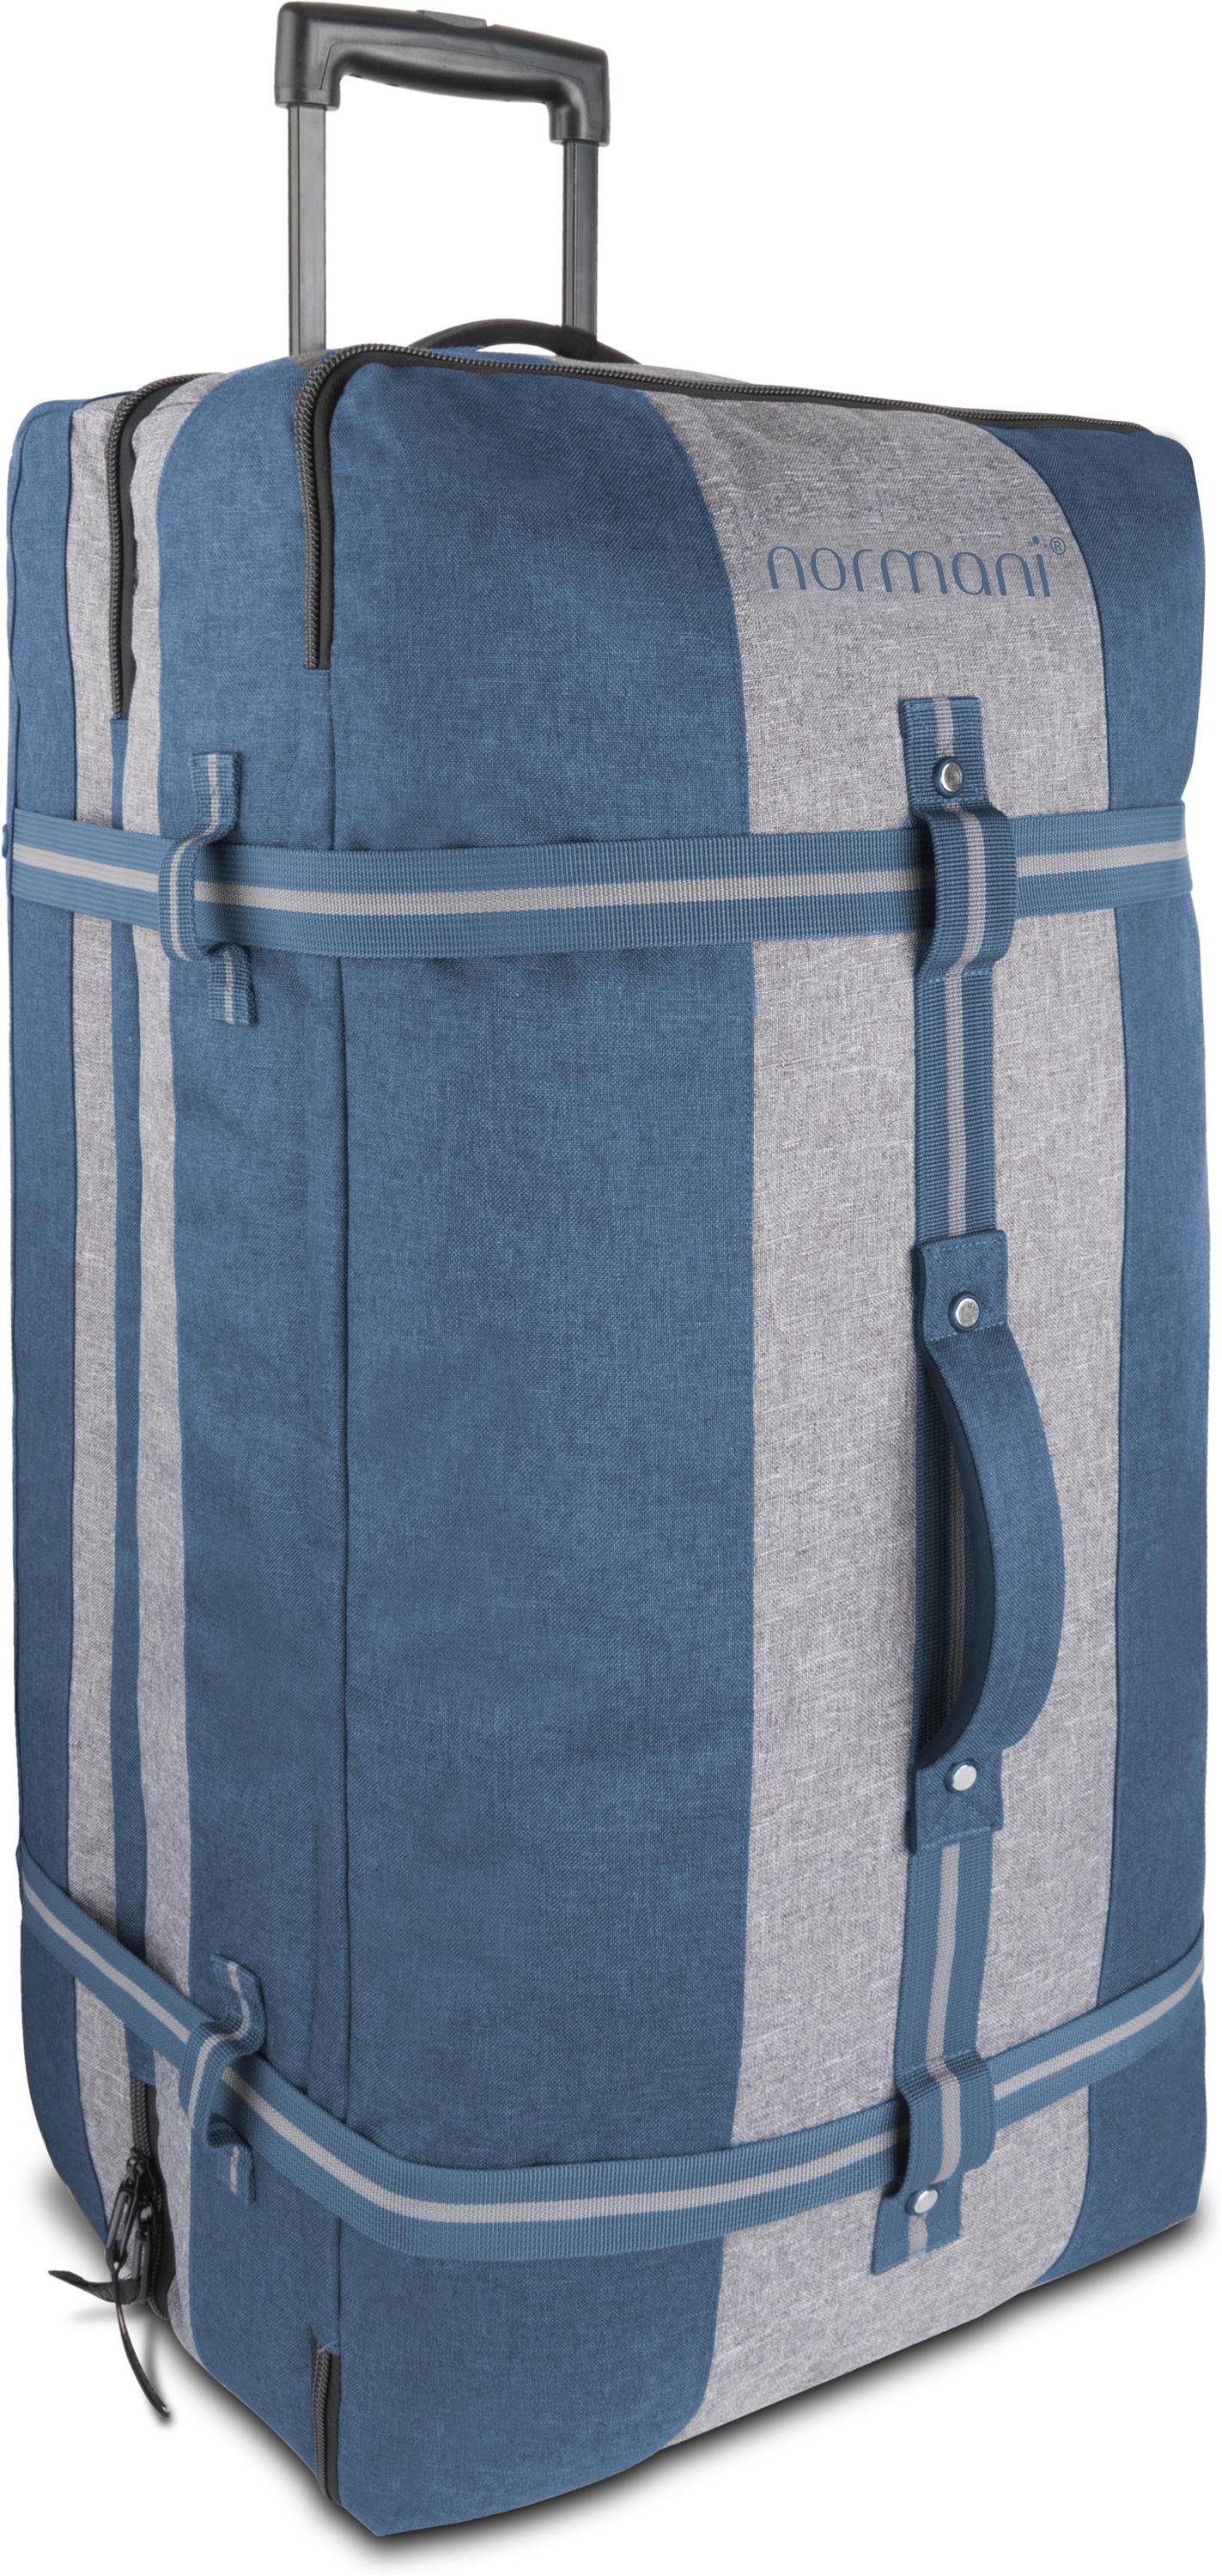 mit Blau/Grau Reisetasche 125 Reisetasche normani Aurori Reisetasche Kleidertaschen mit 125, 4 Große L Rollen